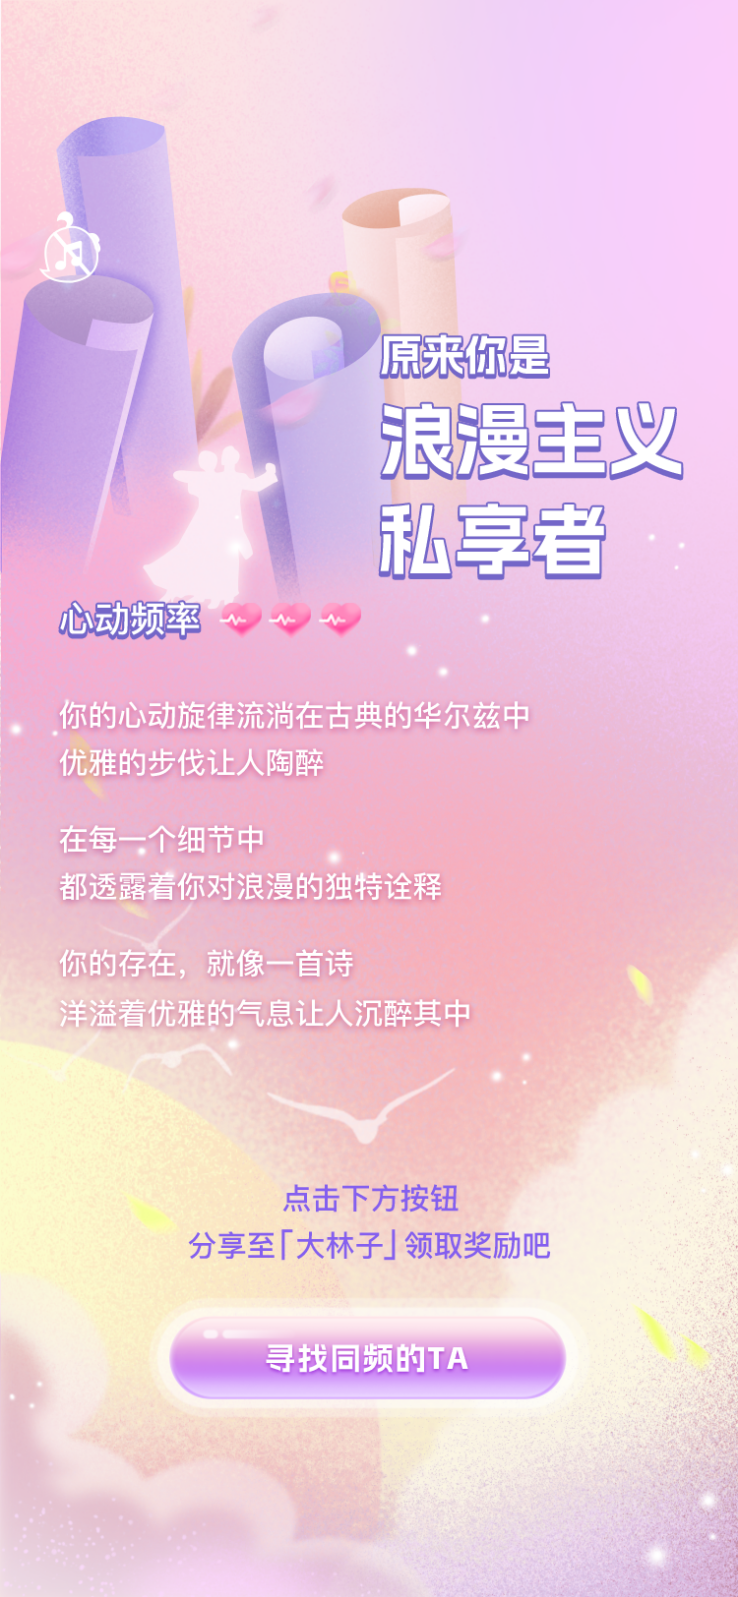 更适合中国宝宝体质的恋爱测试 ，快来皮雀app一起测测吧！